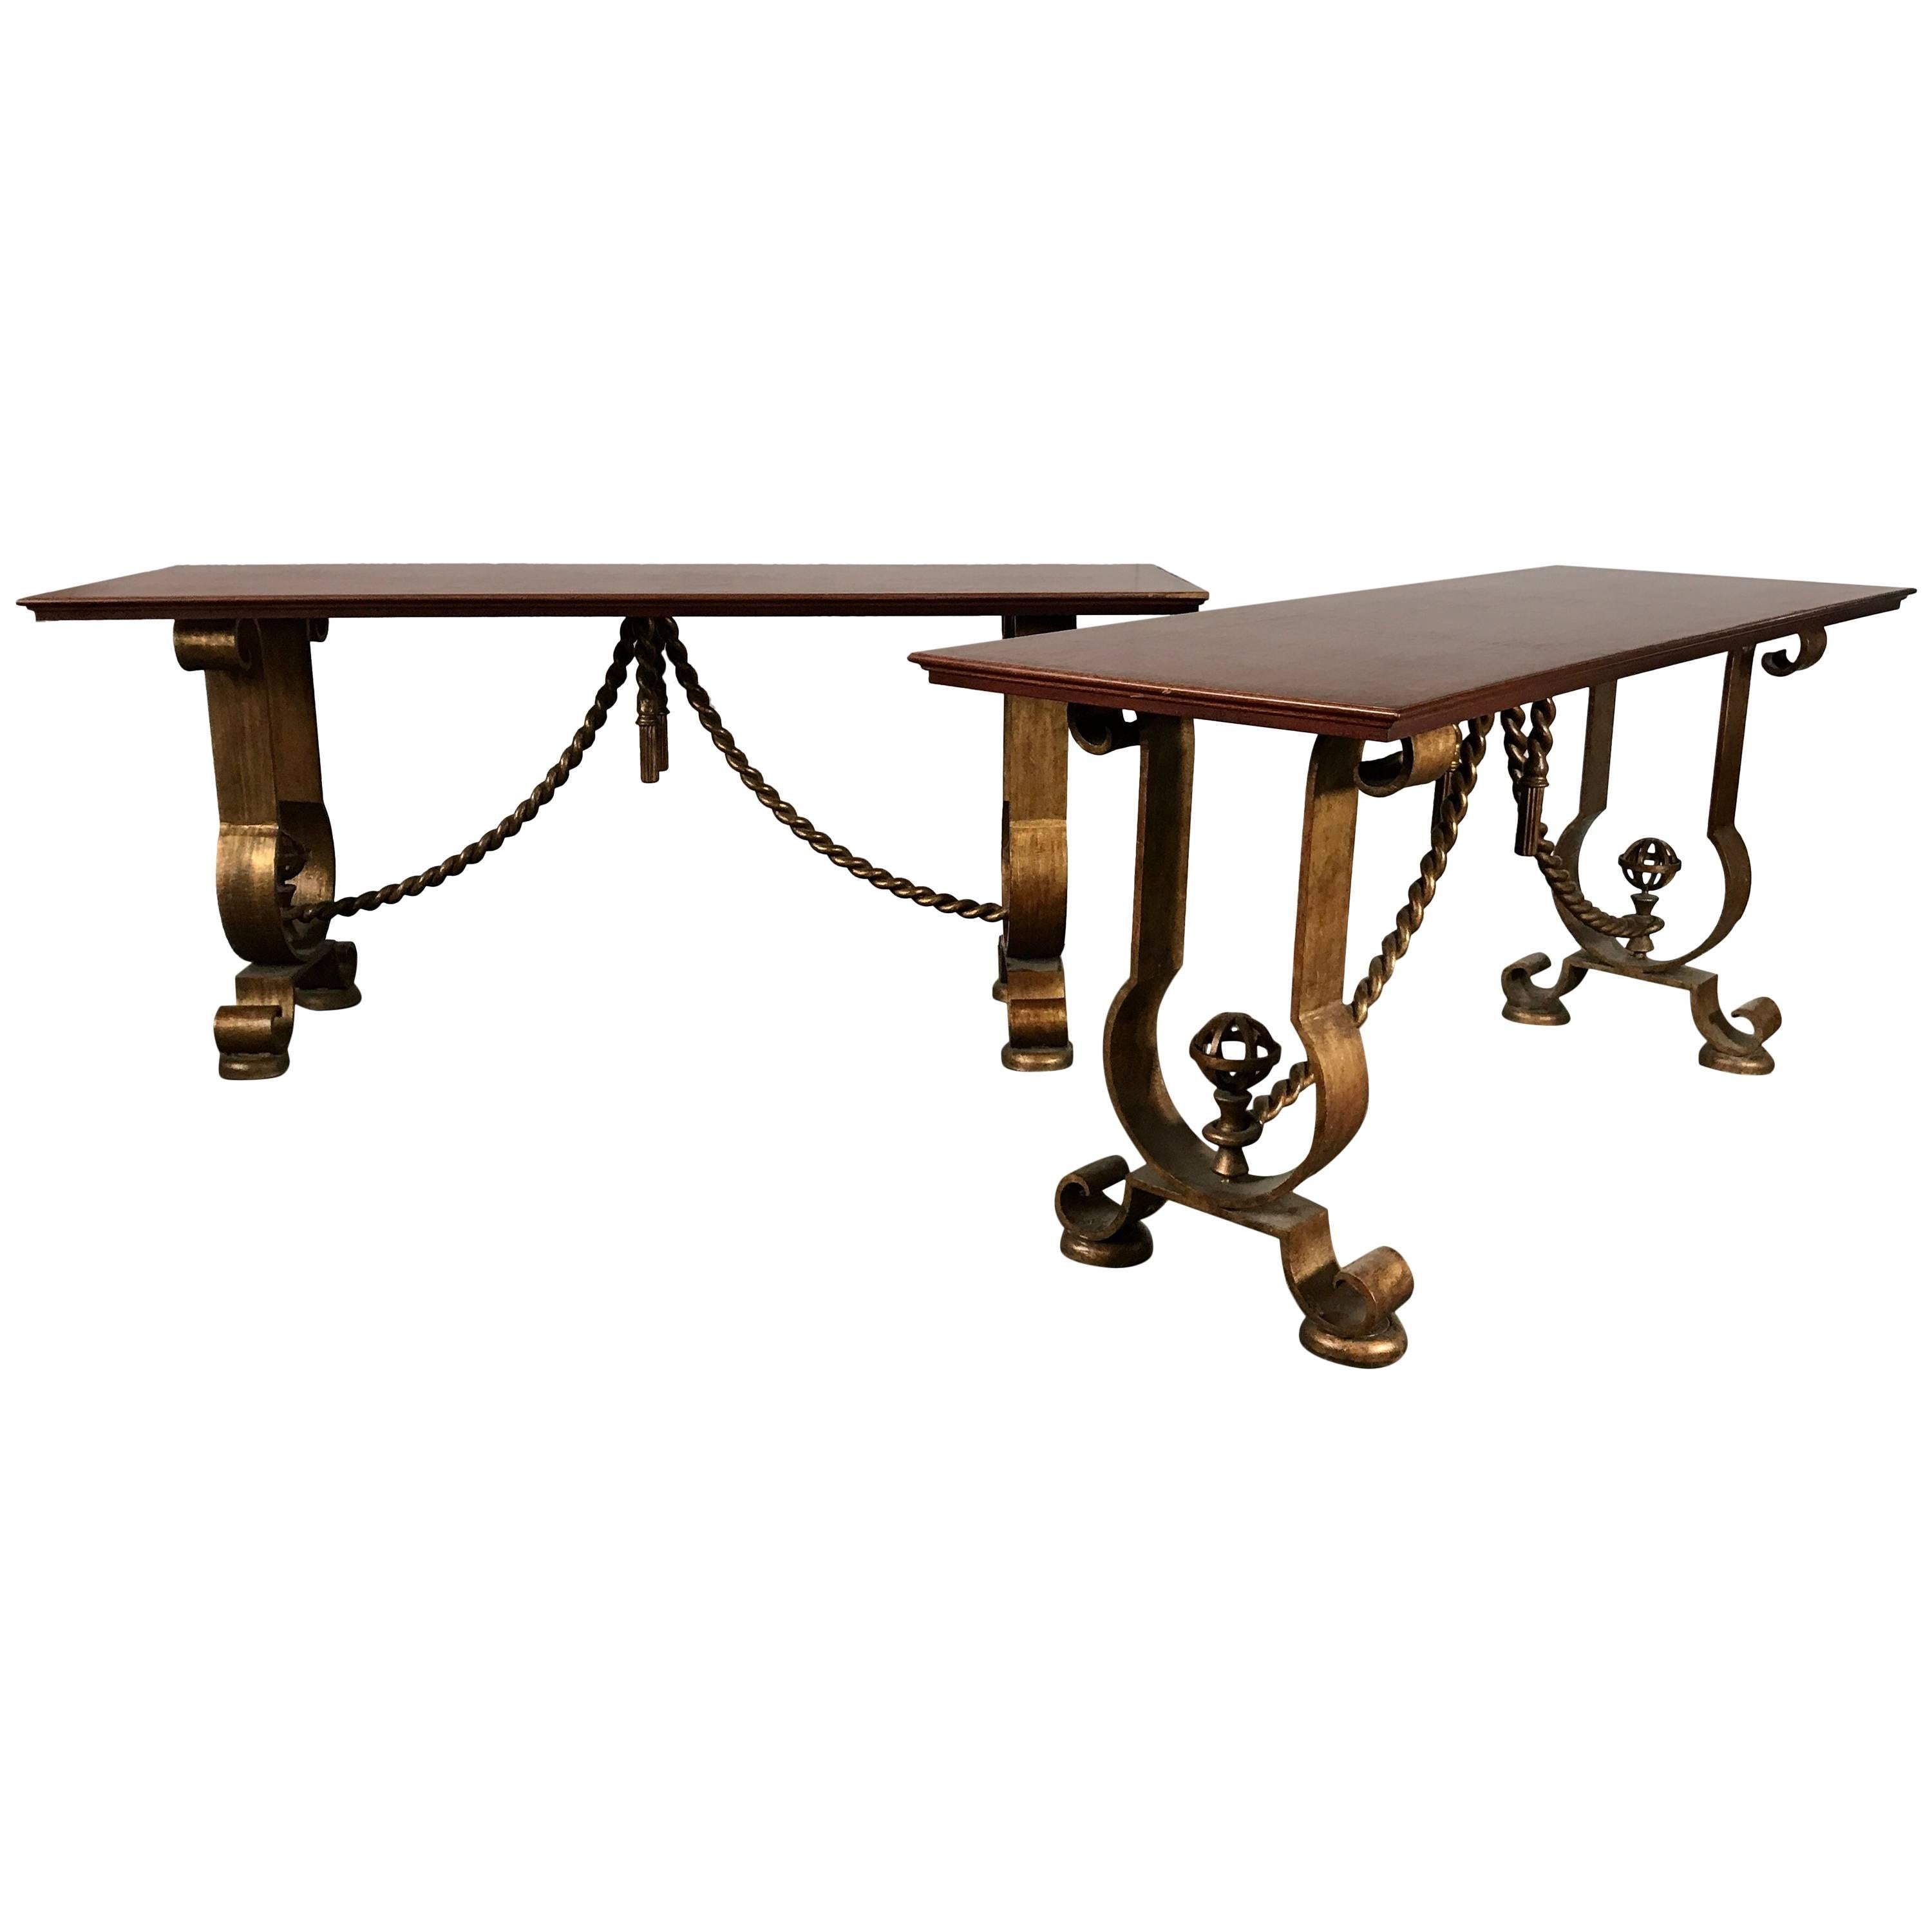 Paire de tables consoles françaises dorées à l'or Murray's Iron Works de style G. Poillerat